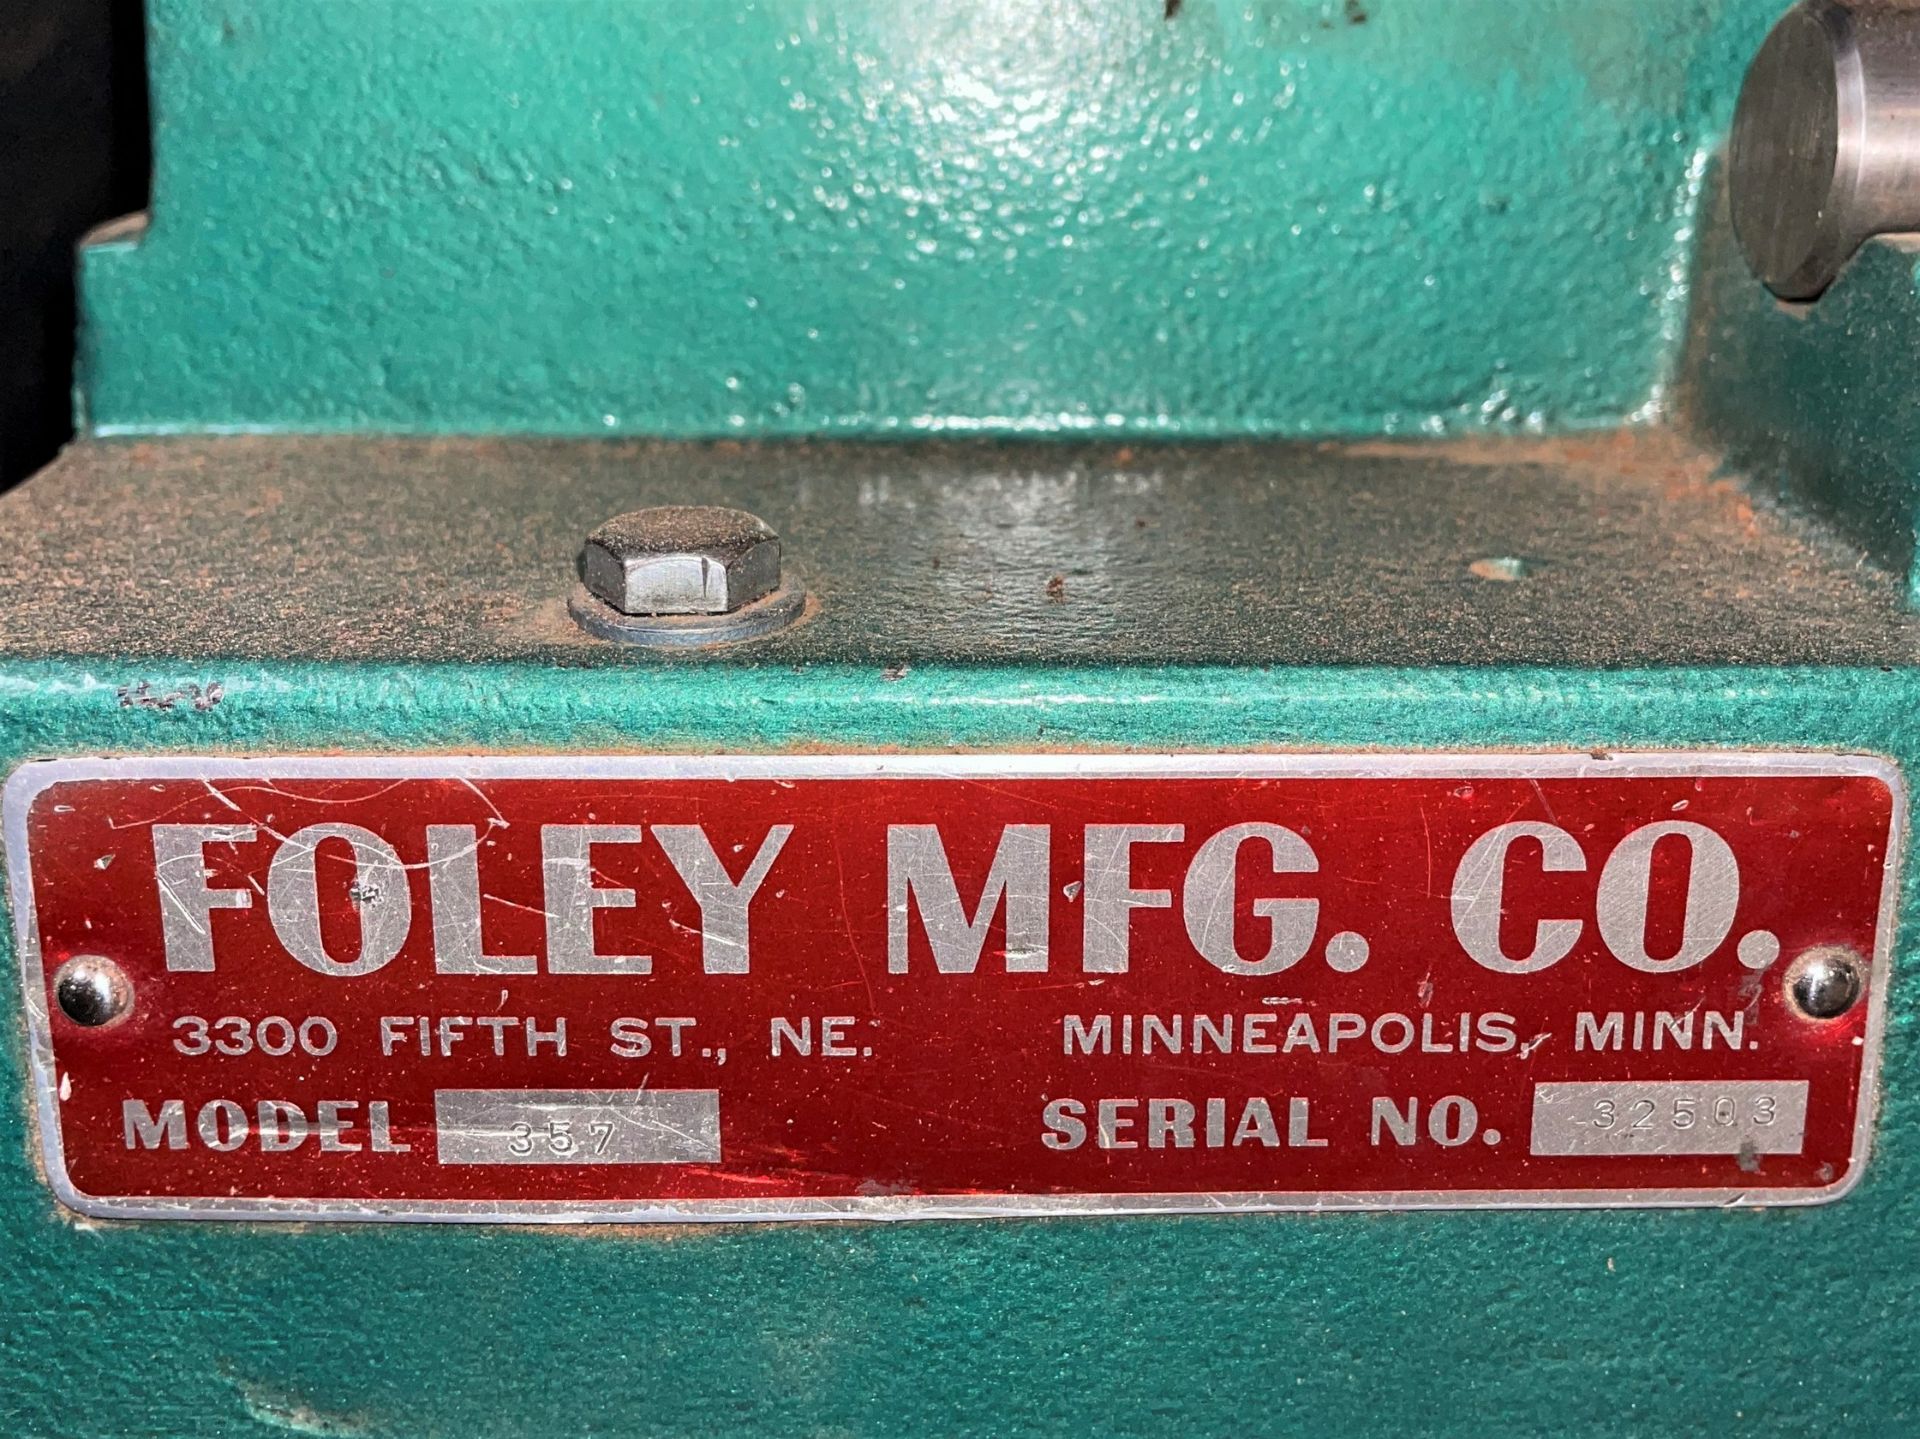 Foley Mdl. 357 Carbide Saw Grinder - Image 6 of 6